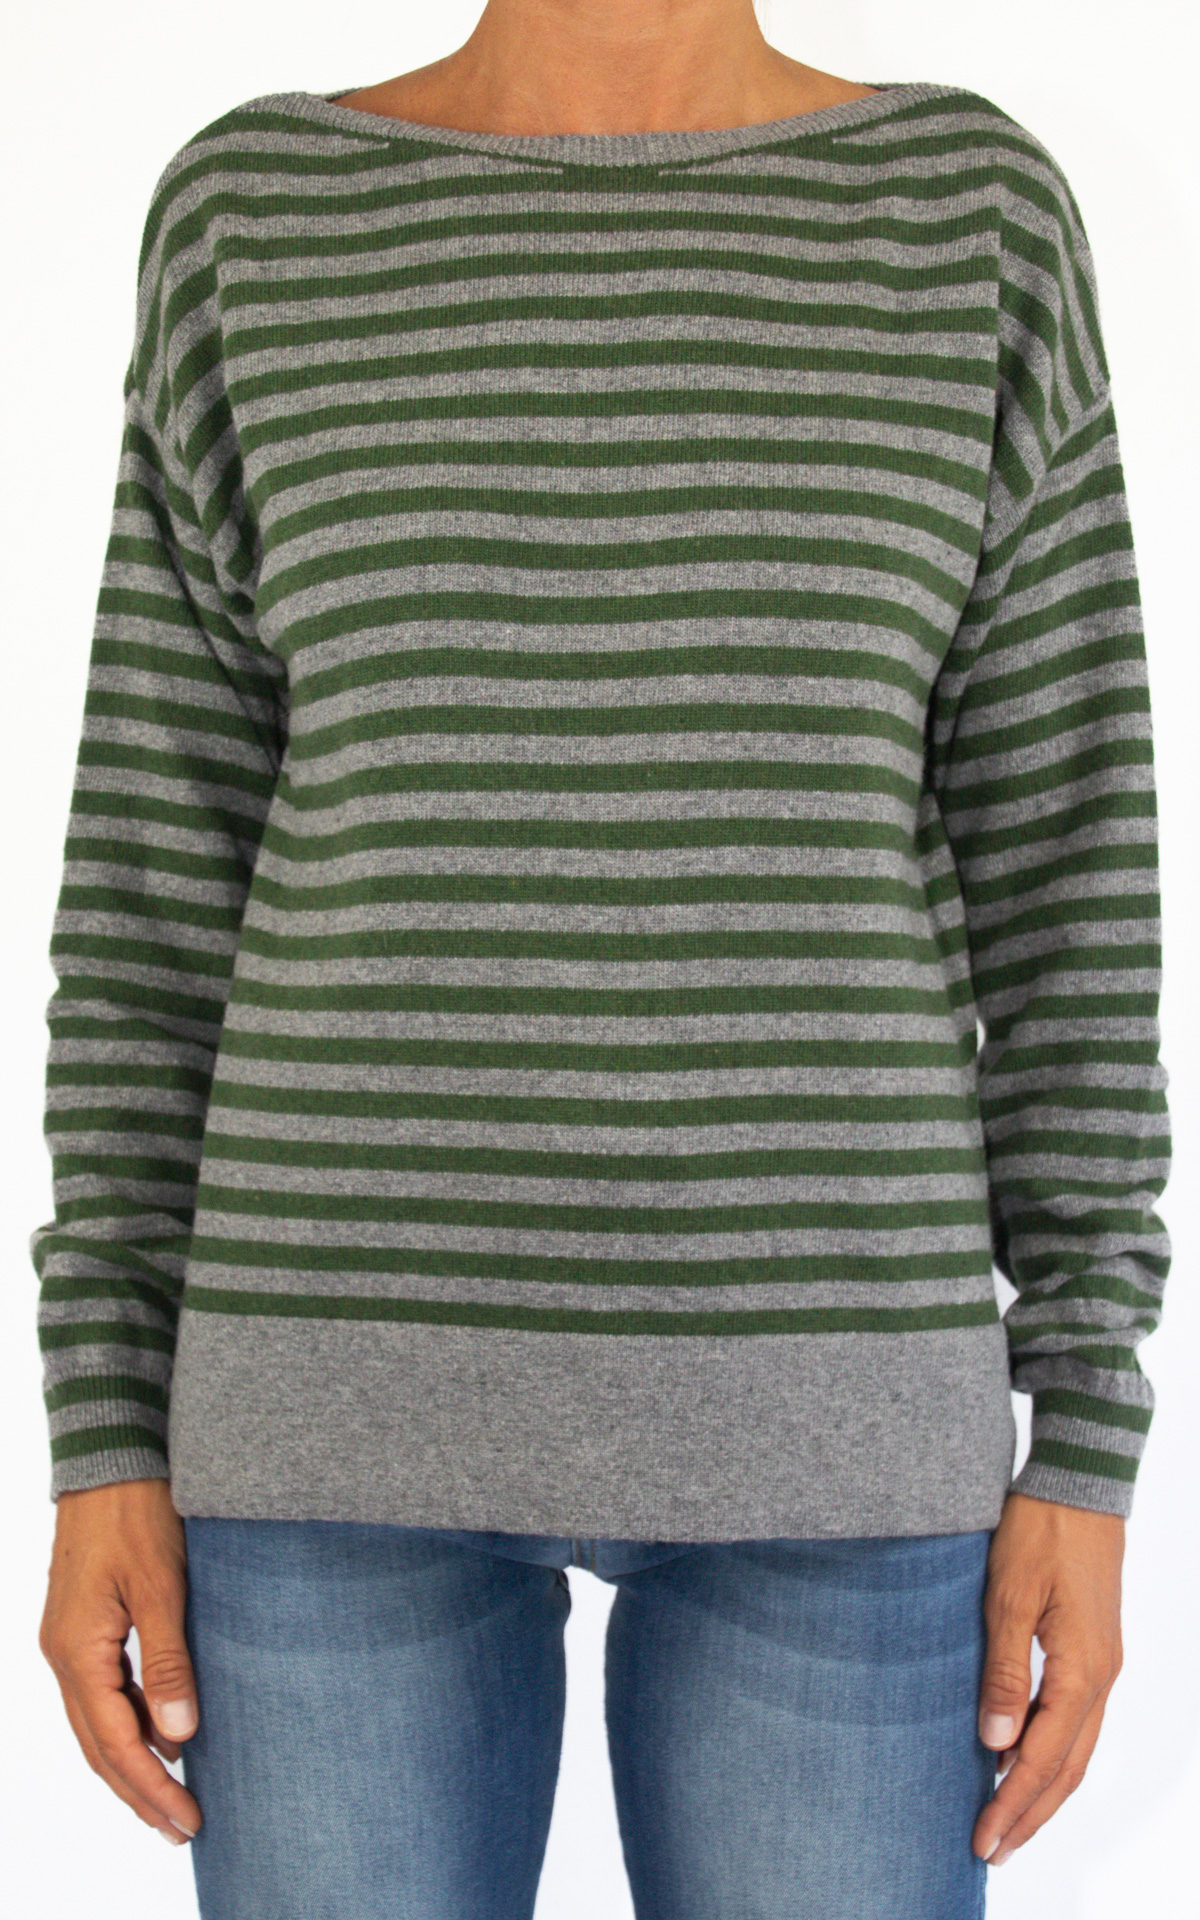 Off-On - maglia bicolore righe - grigio/verde